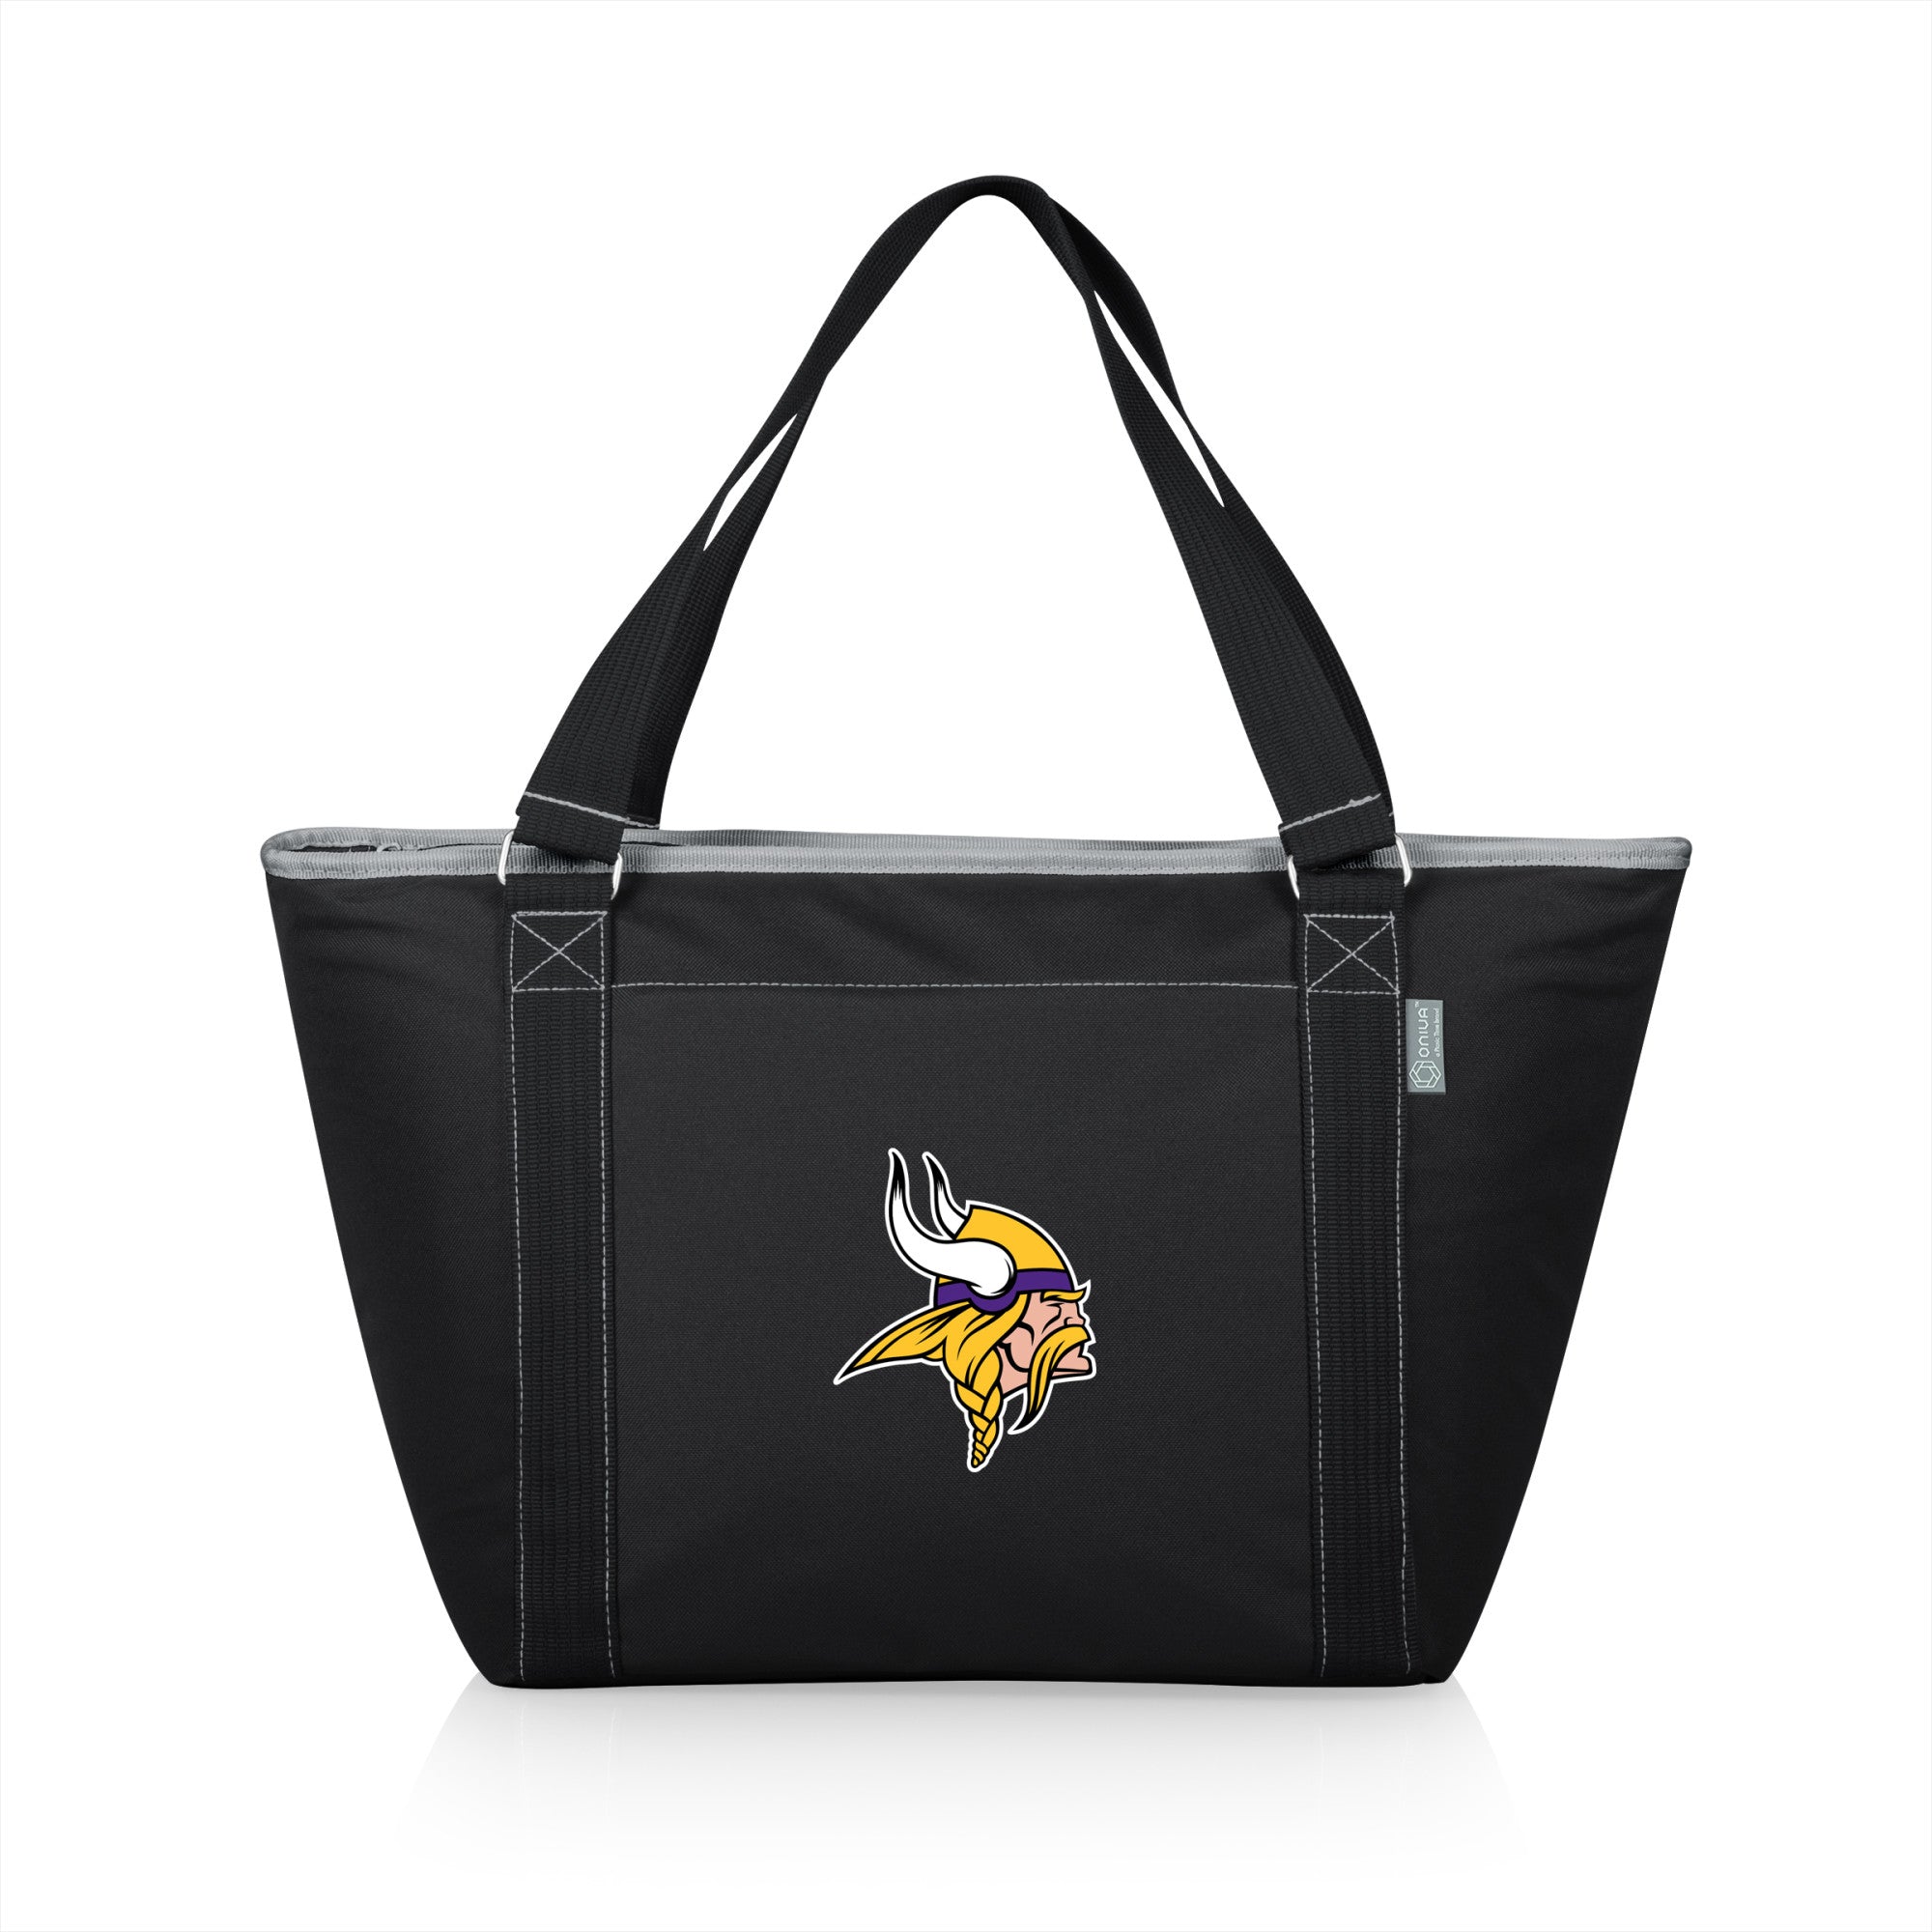 Minnesota Vikings - Topanga Cooler Tote Bag